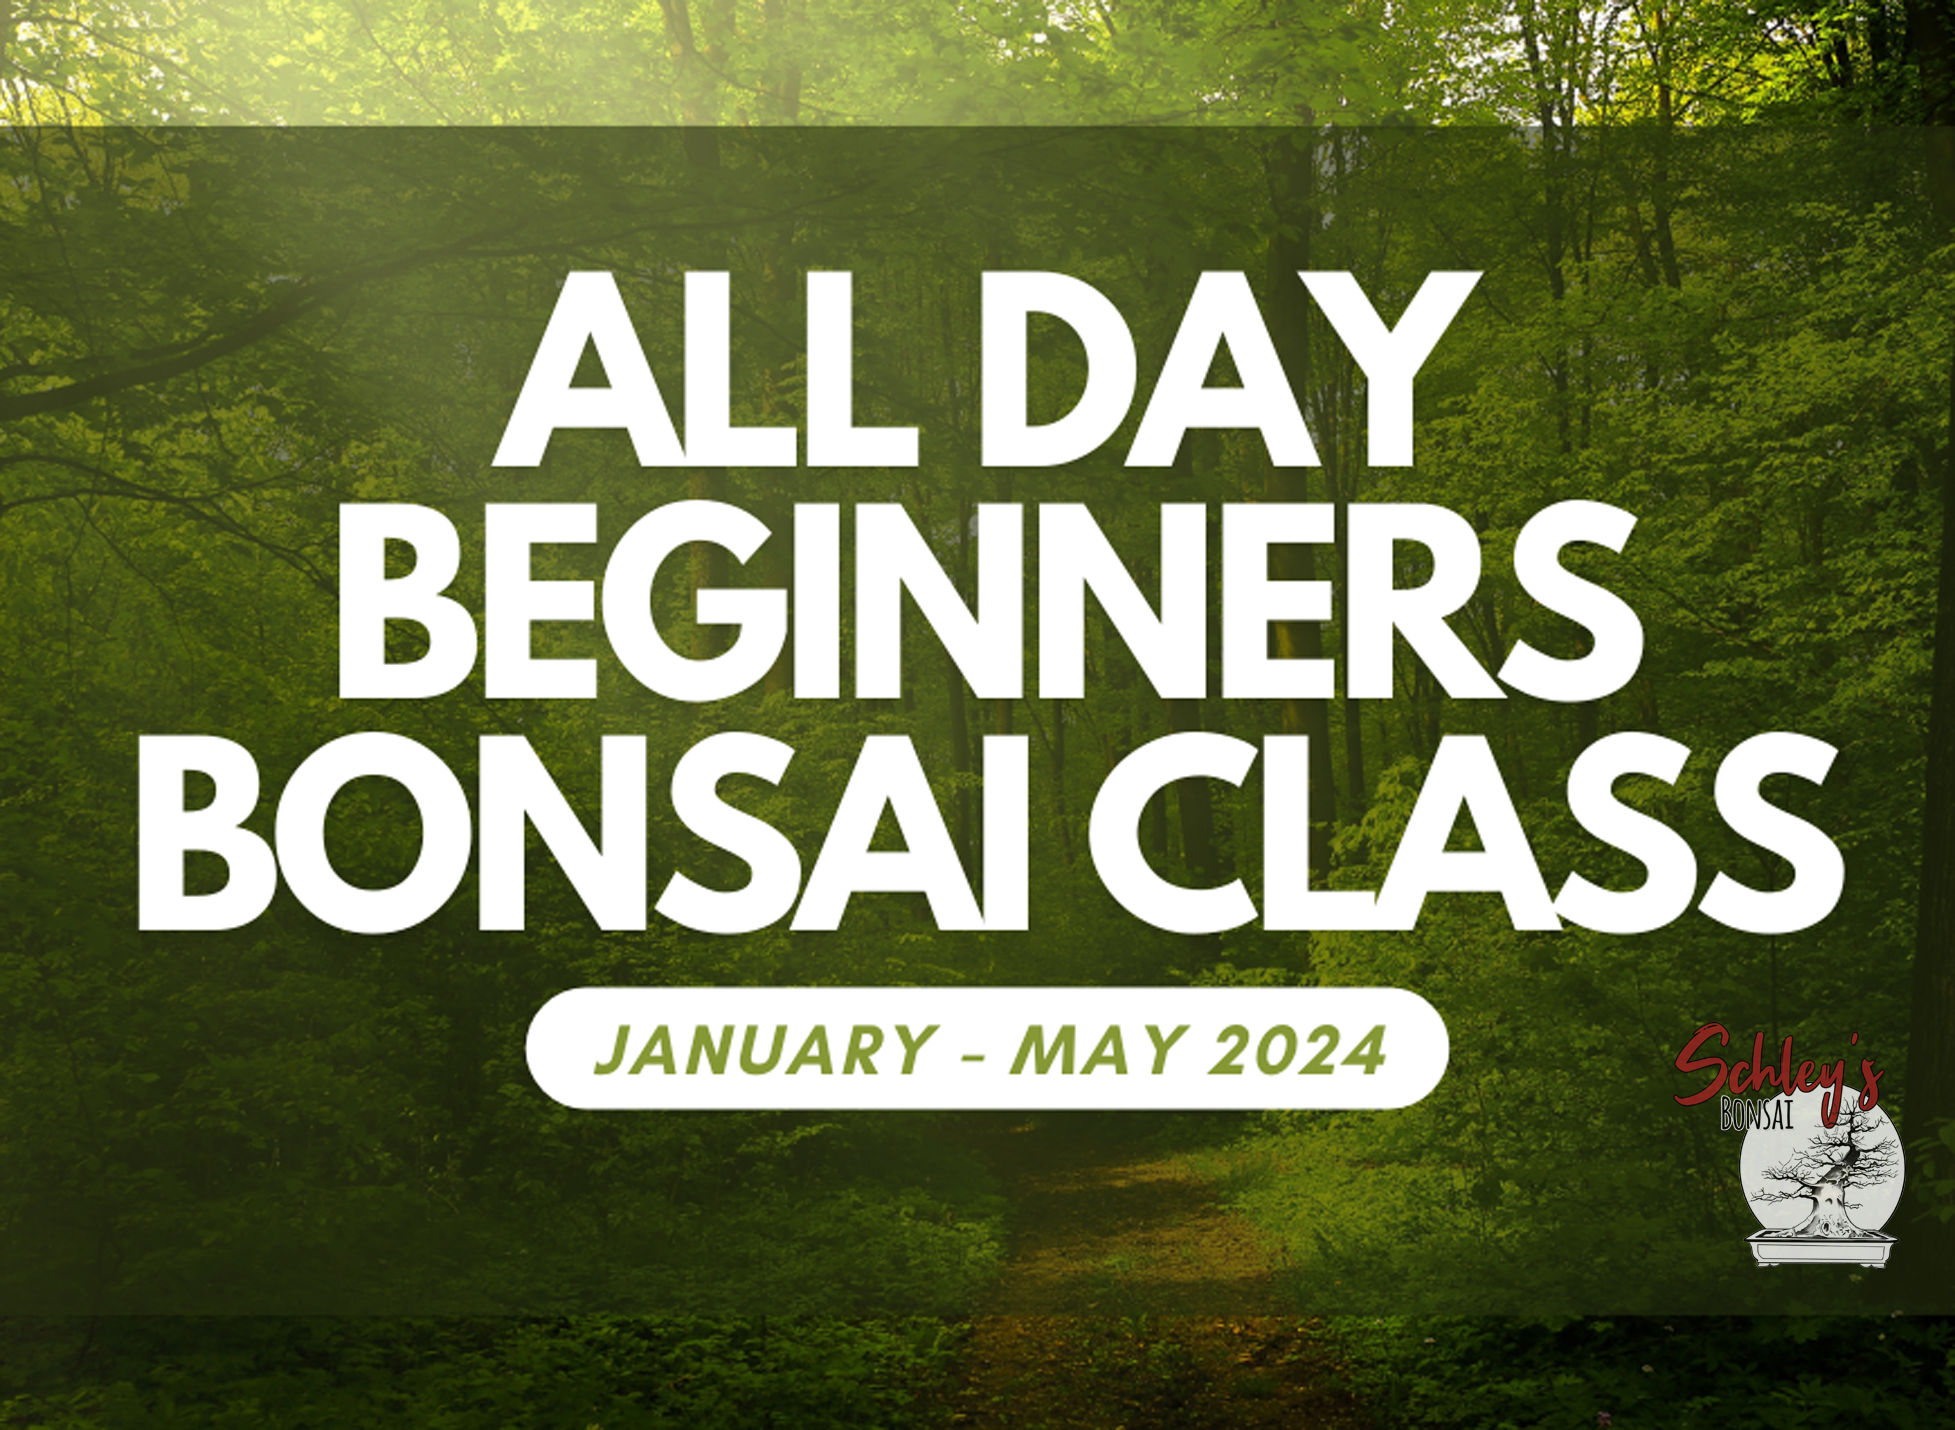 All Day Beginners Bonsai Class